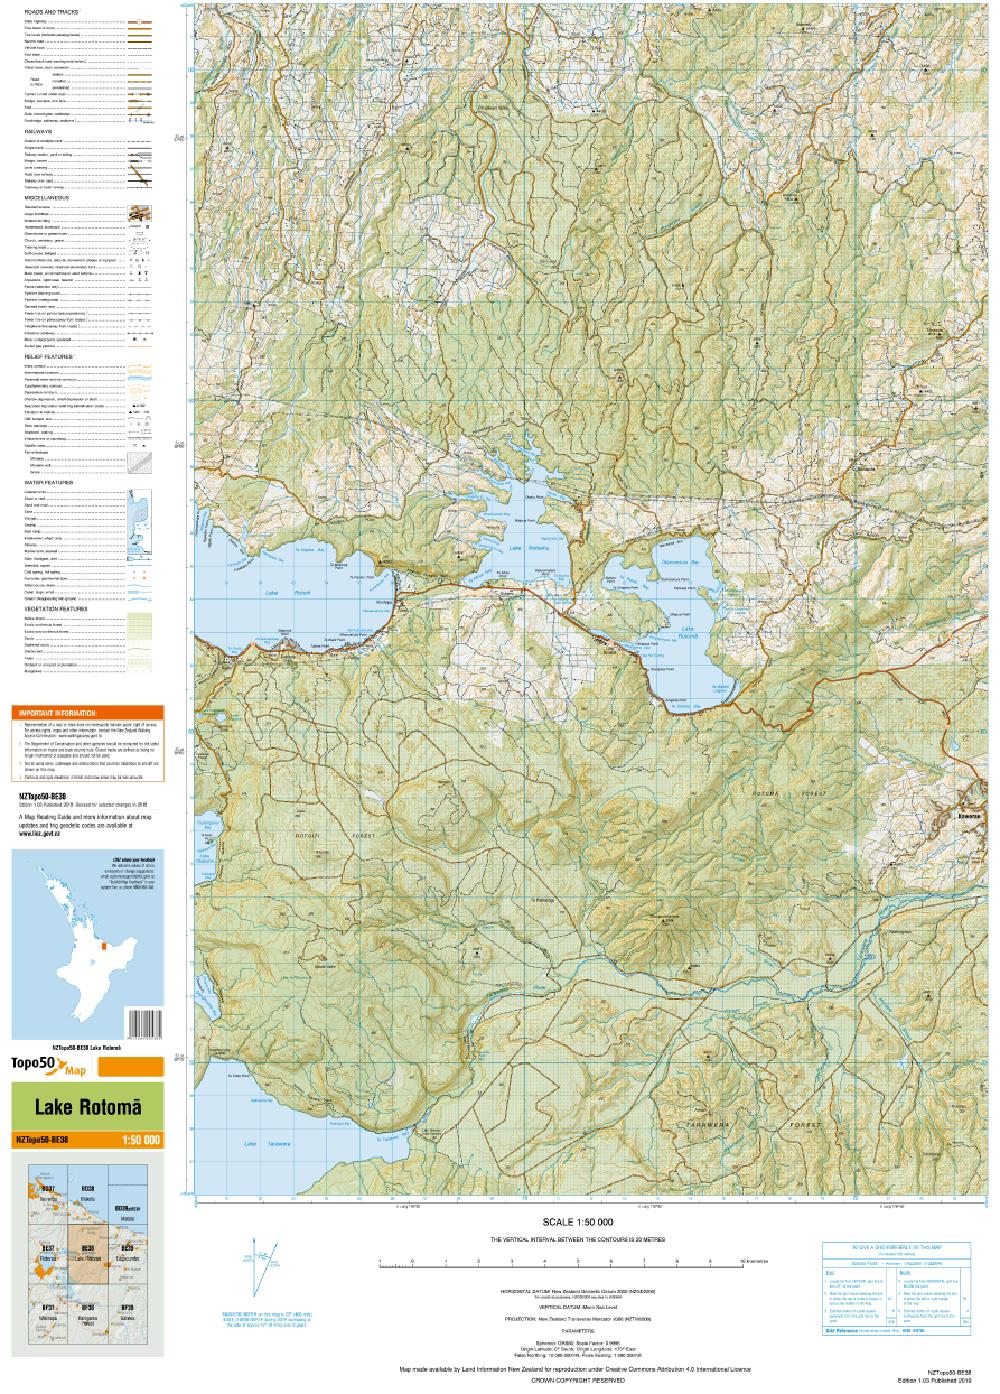 Topo map of Lake Rotoma